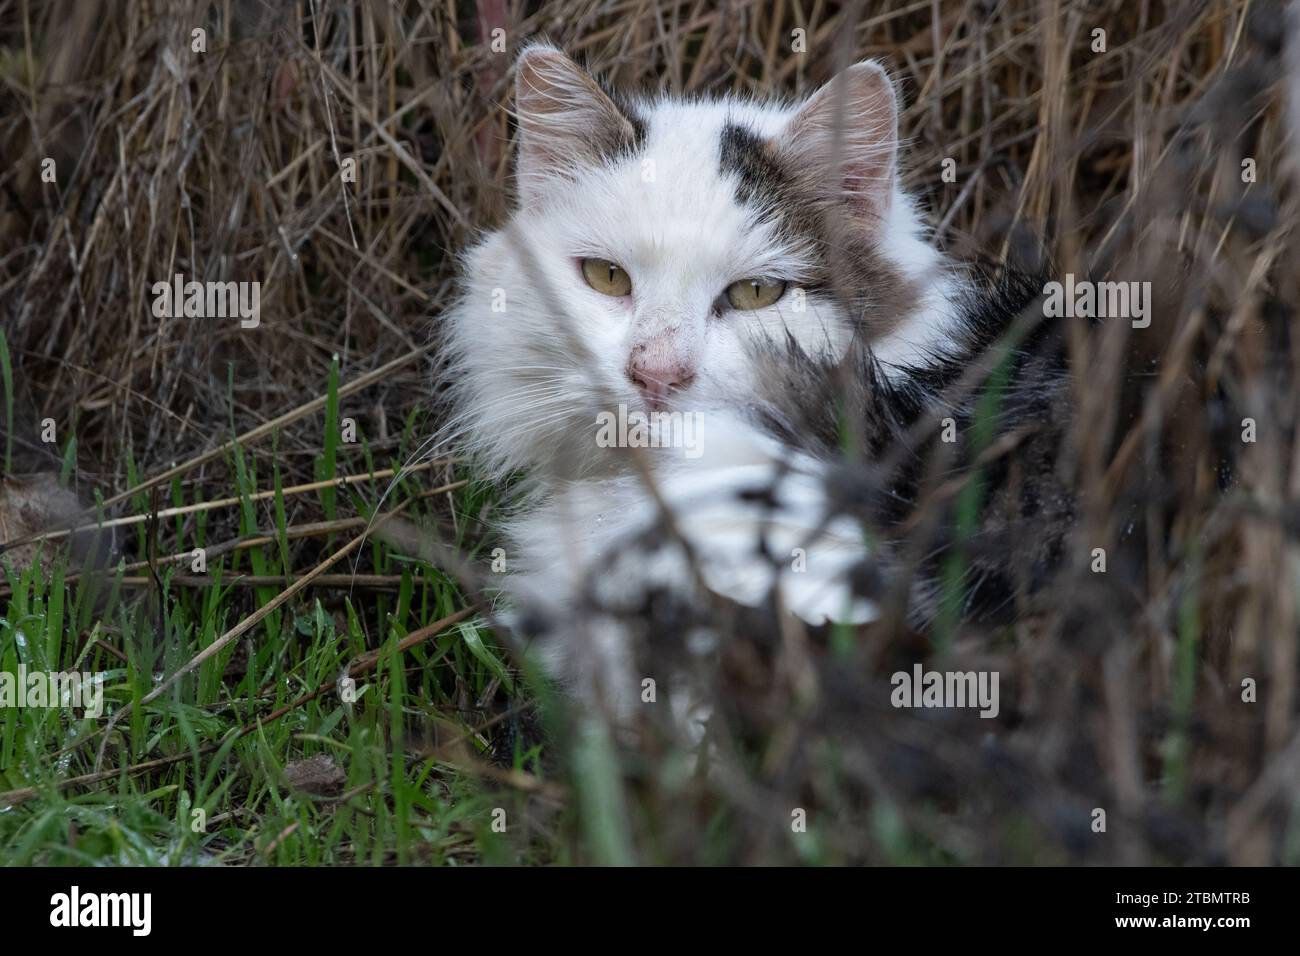 Un gato salvaje, Felis catus, escondido en la hierba en el área de la bahía de San Francisco, California, EE.UU Foto de stock